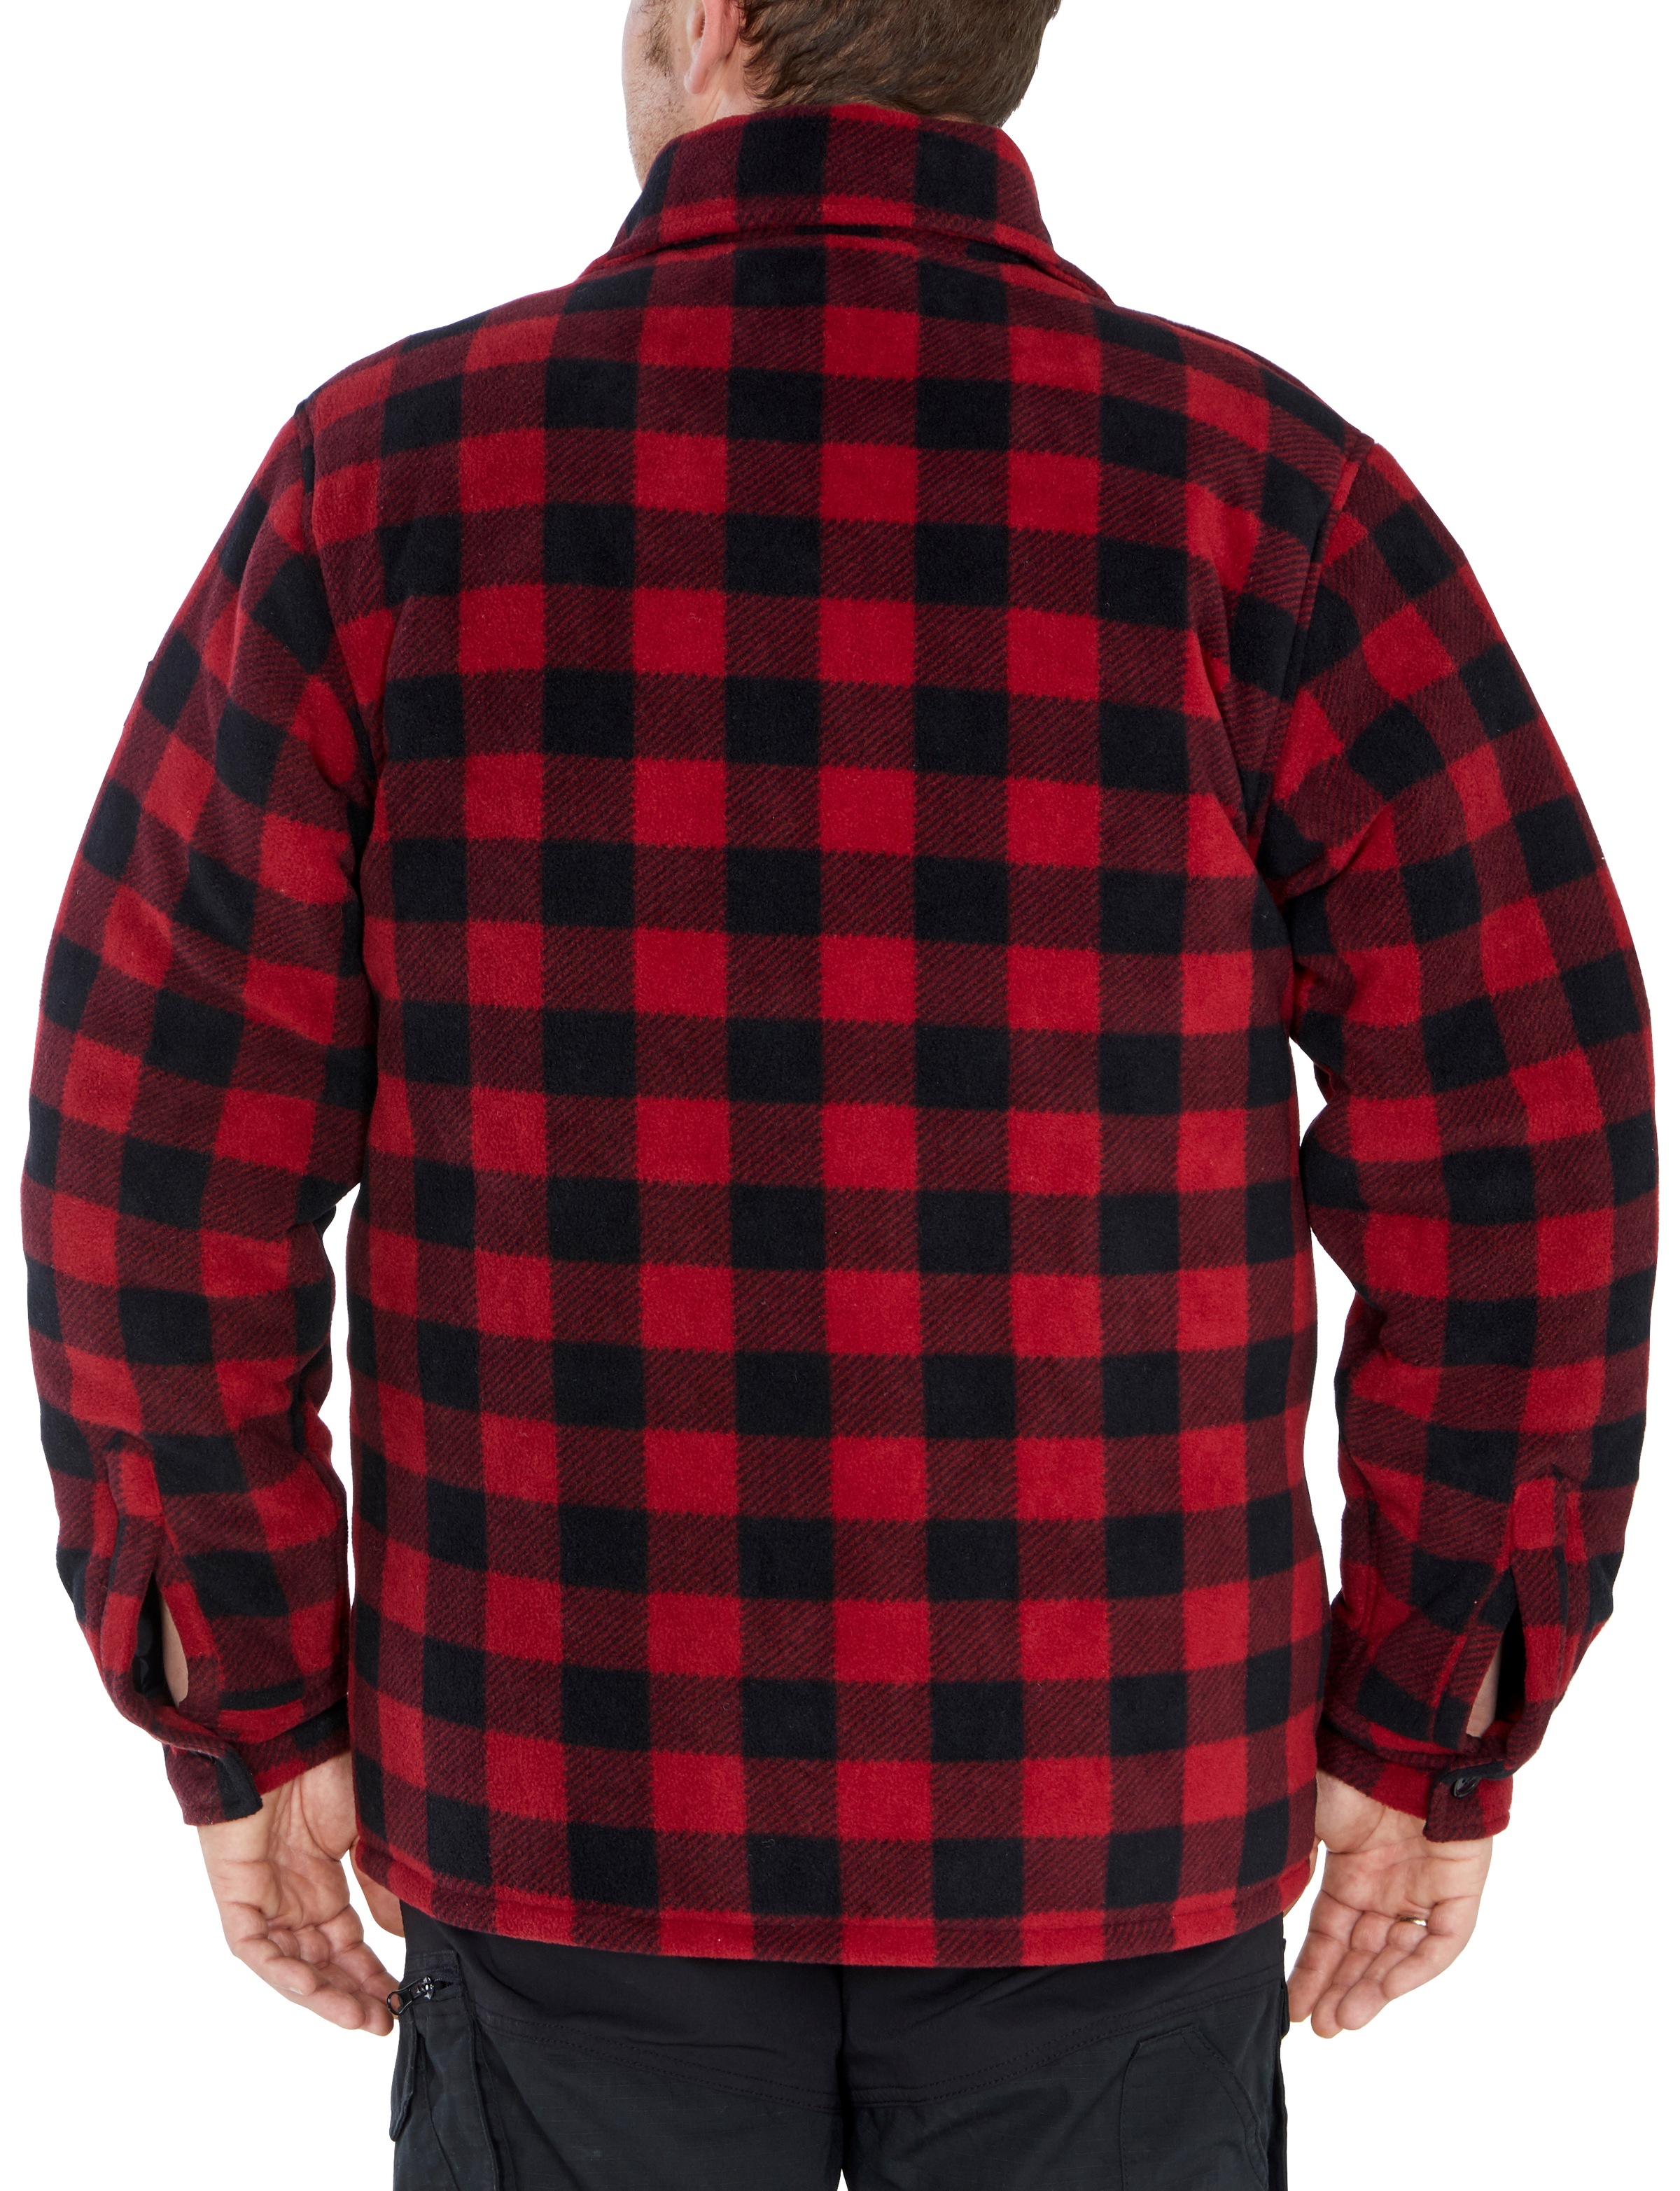 Northern Country Flanellhemd, (als ♕ Jacke mit Rücken, 5 gefüttert, zu oder bei Taschen, Flanellstoff warm offen tragen), mit Hemd zugeknöpft verlängertem